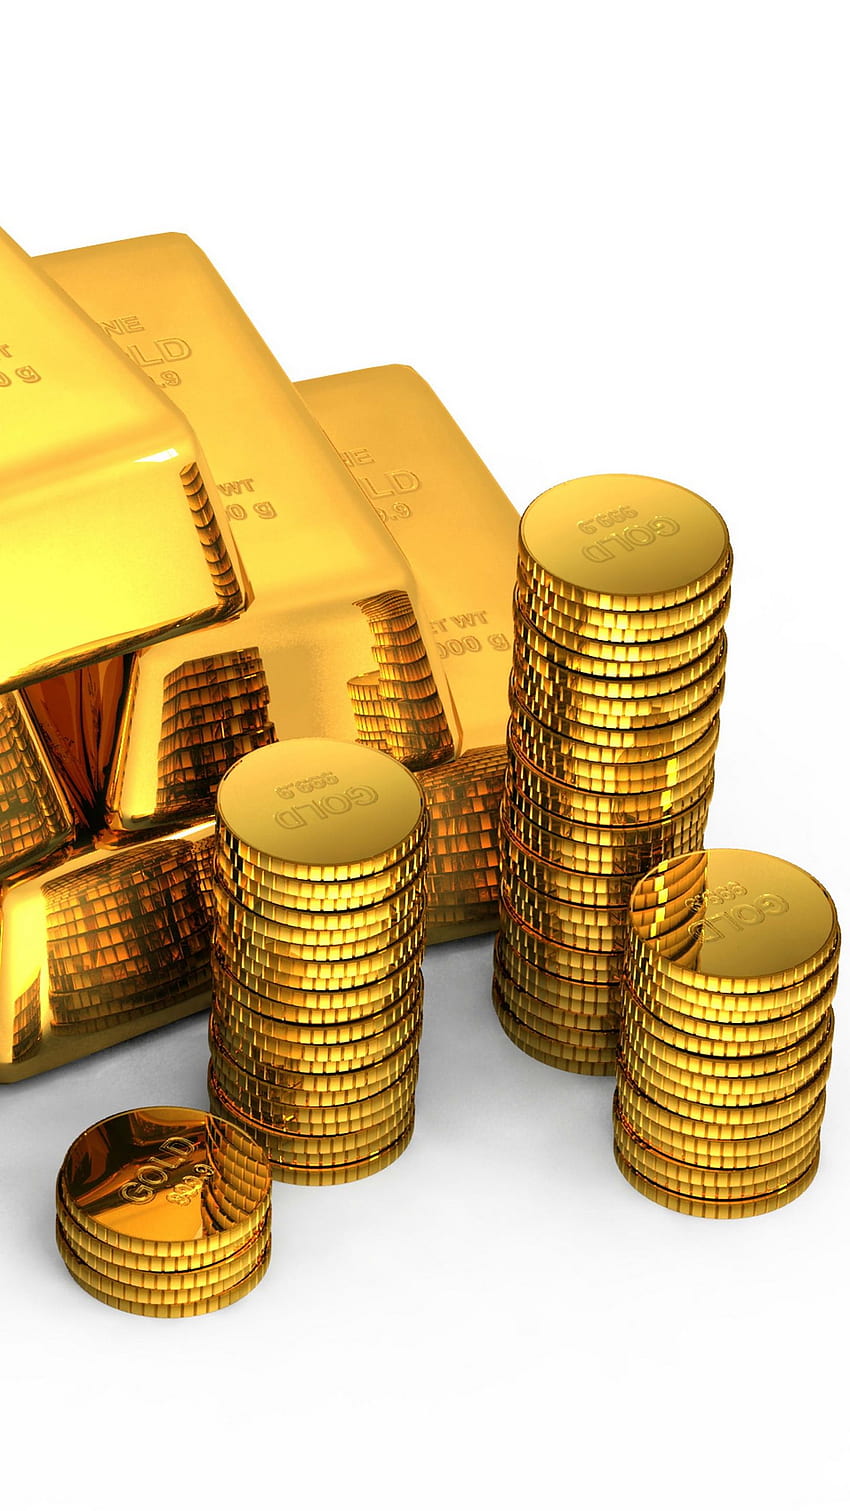 Emas, Batangan, Koin, Latar Belakang Putih, Uang - iPhone Emas Dan Uang wallpaper ponsel HD